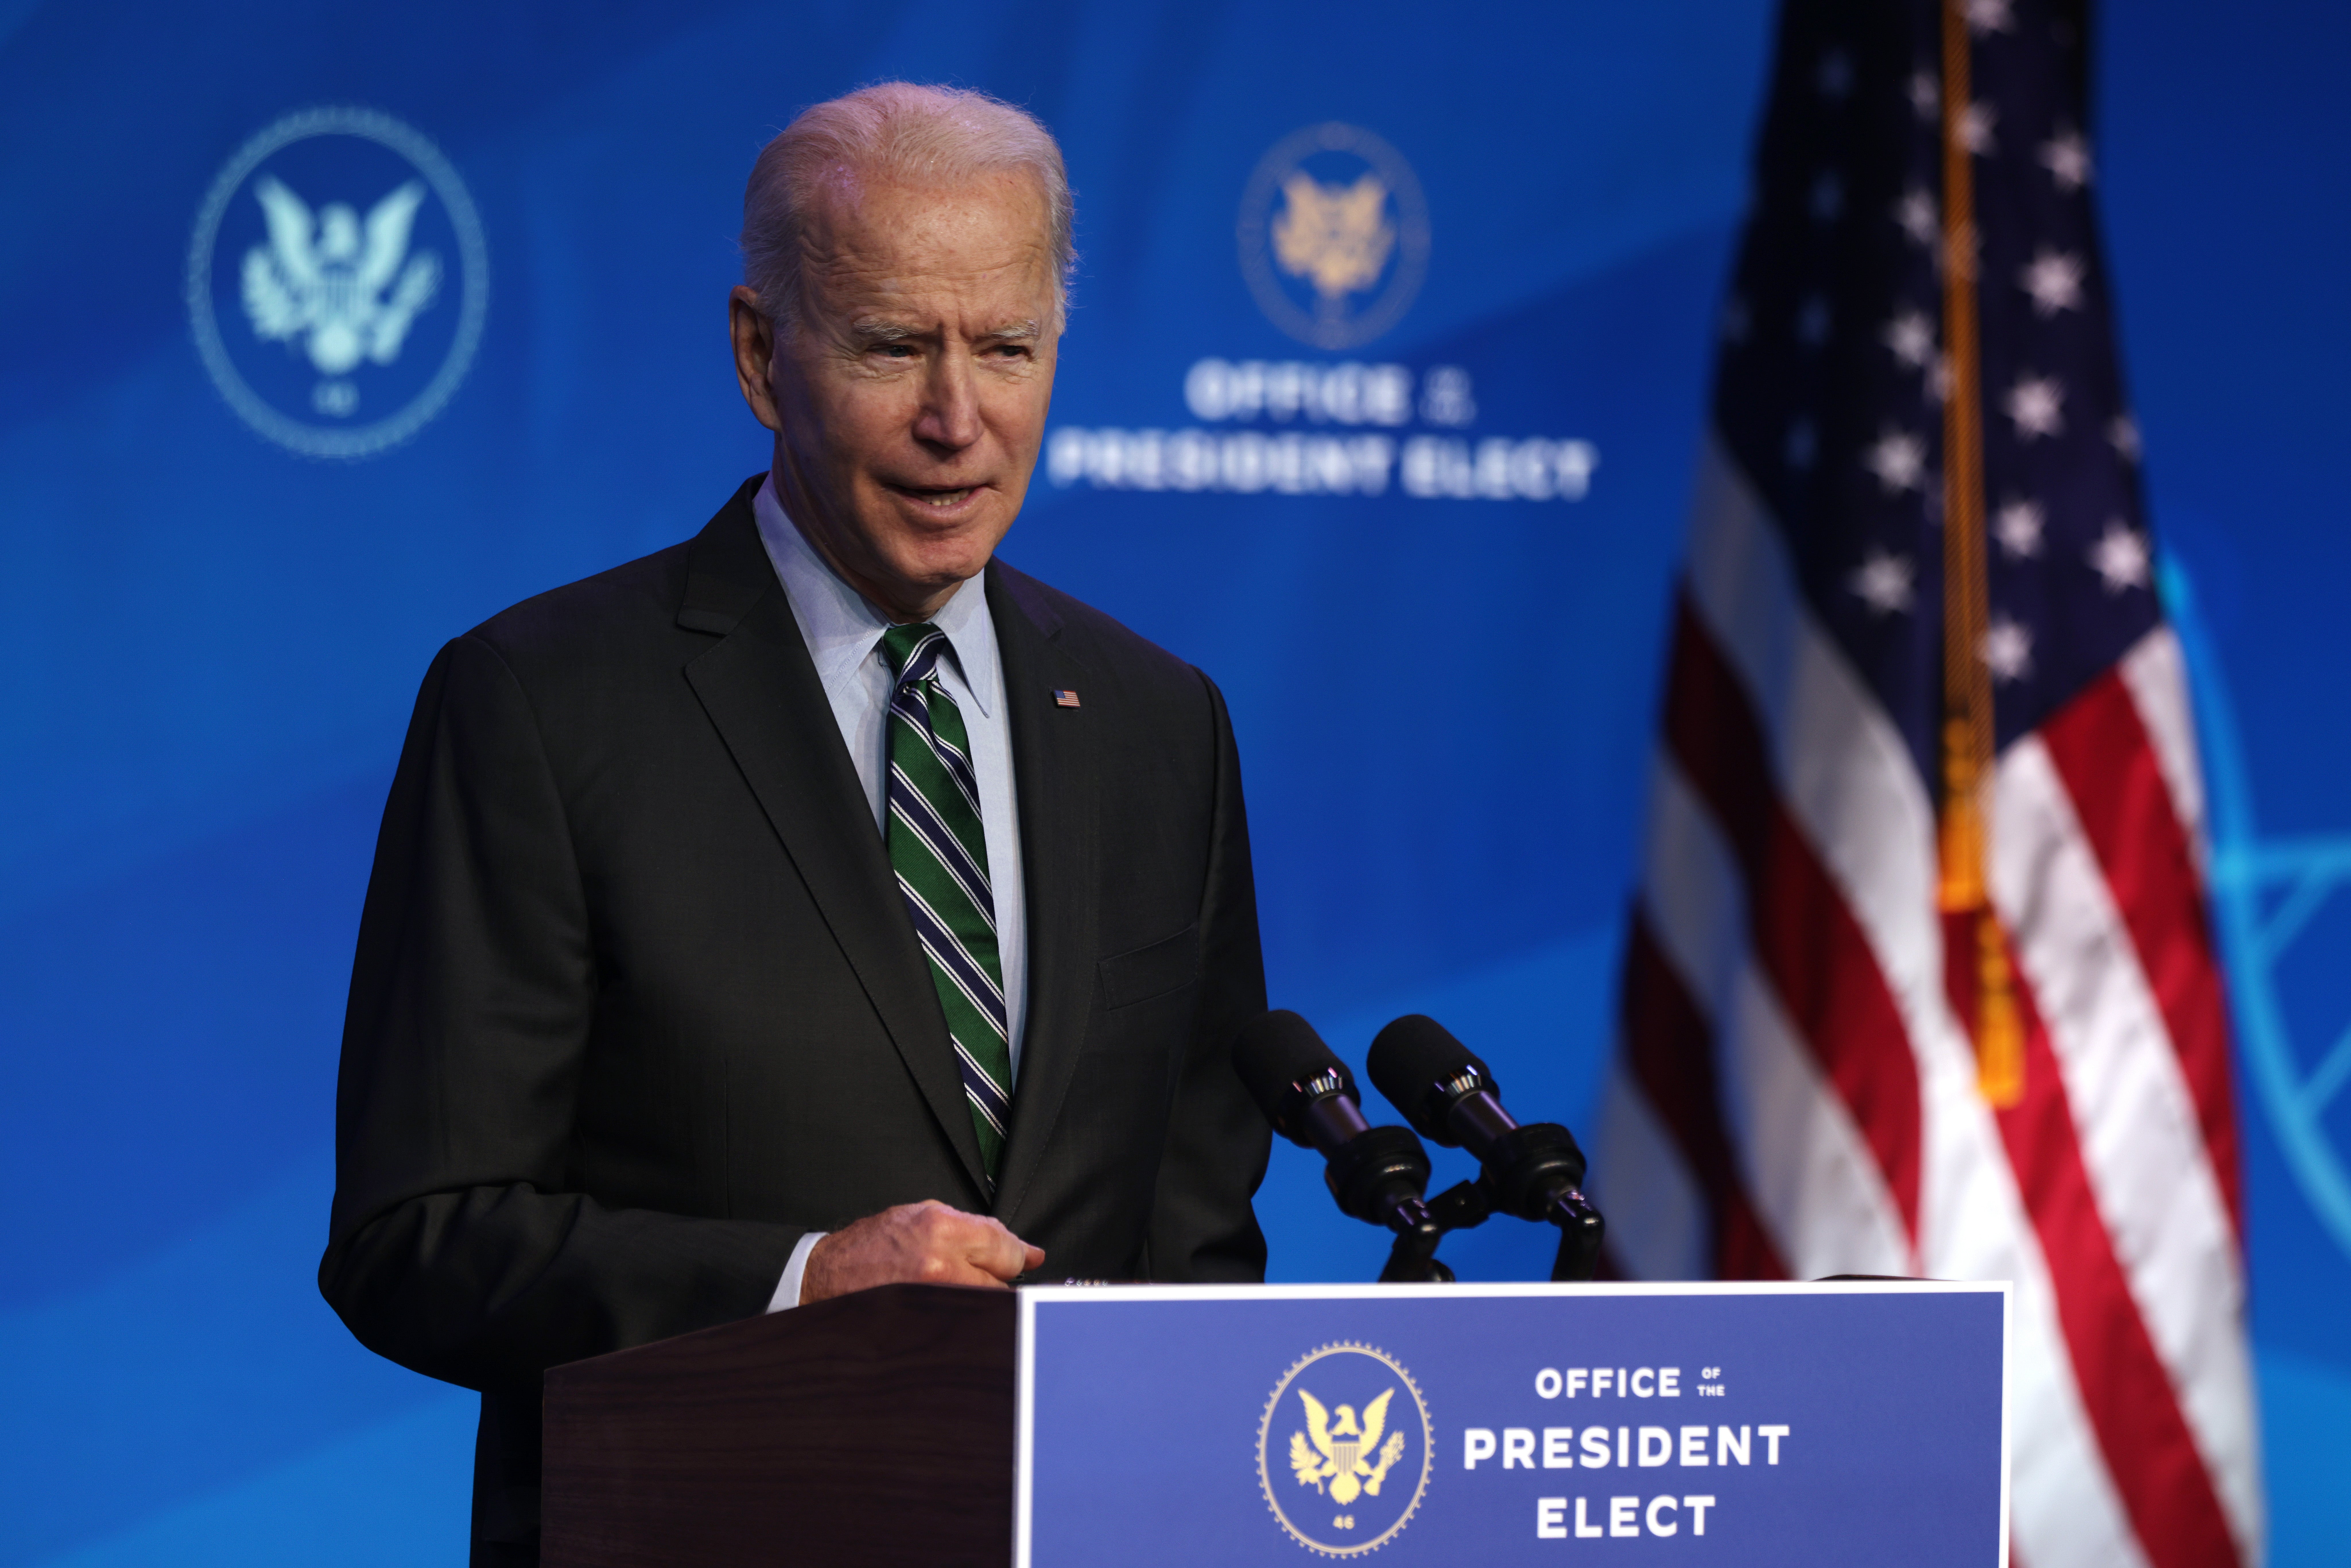 El éxito o no de la presidencia de Joe Biden dependerá de si Estados Unidos logra una recuperación económica verdaderamente exitosa